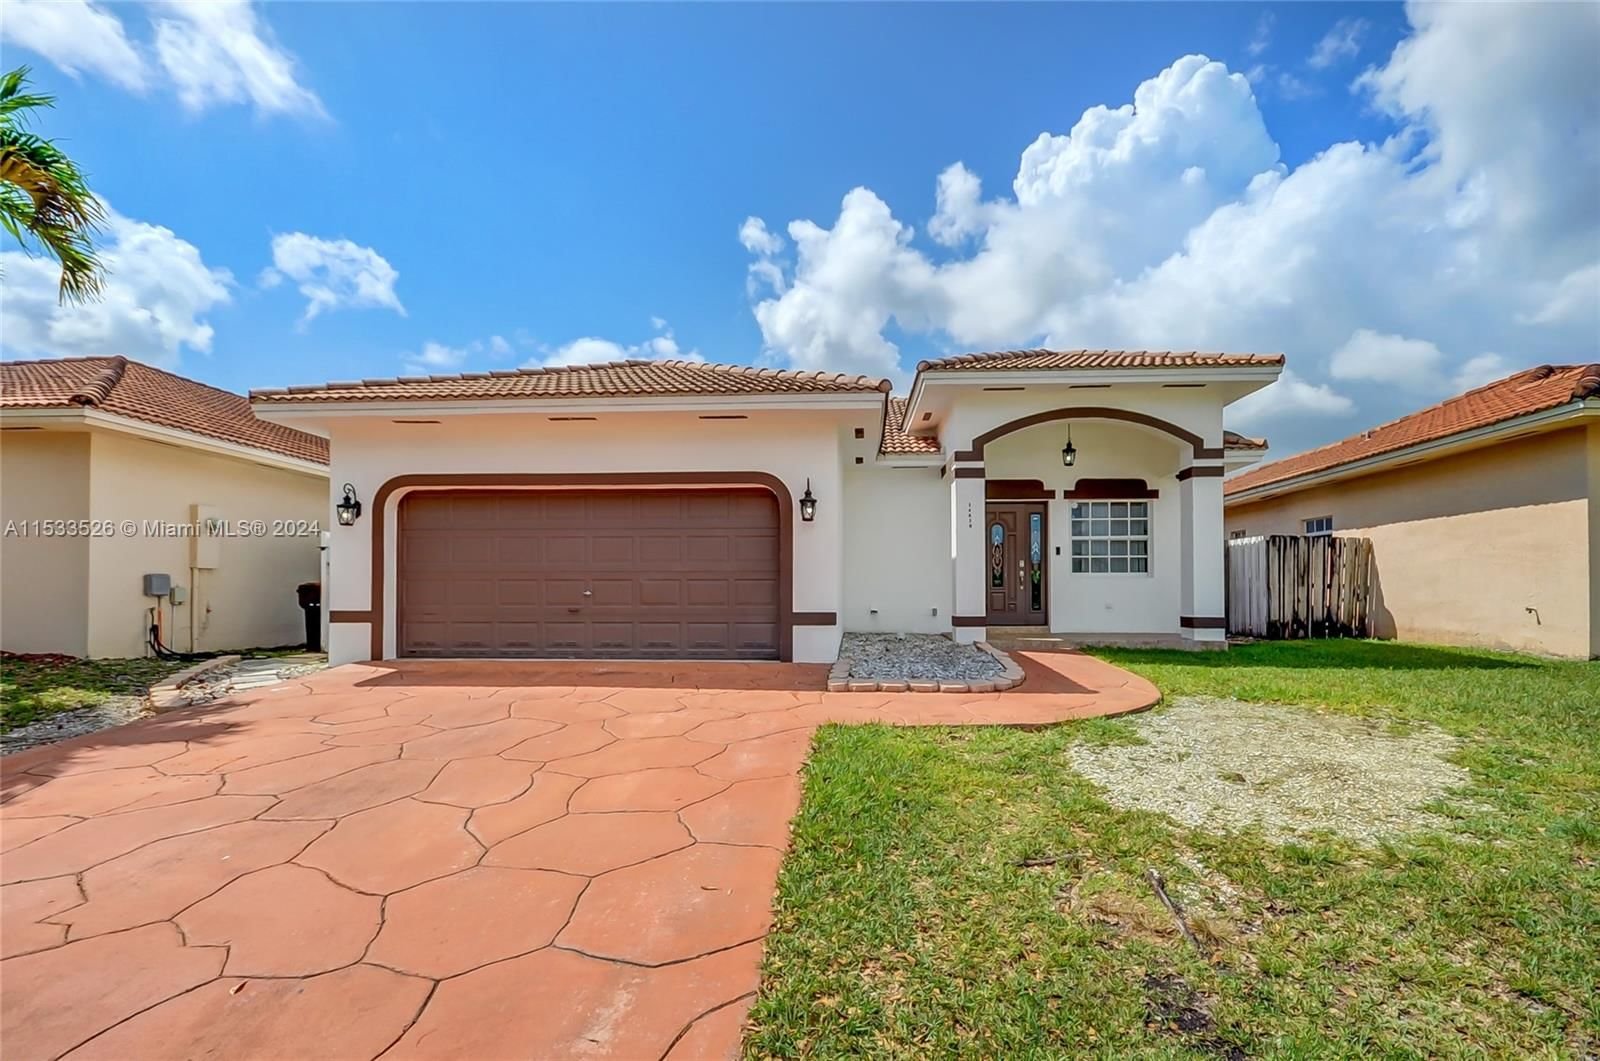 Real estate property located at 14610 180th St, Miami-Dade County, FC SUB, Miami, FL